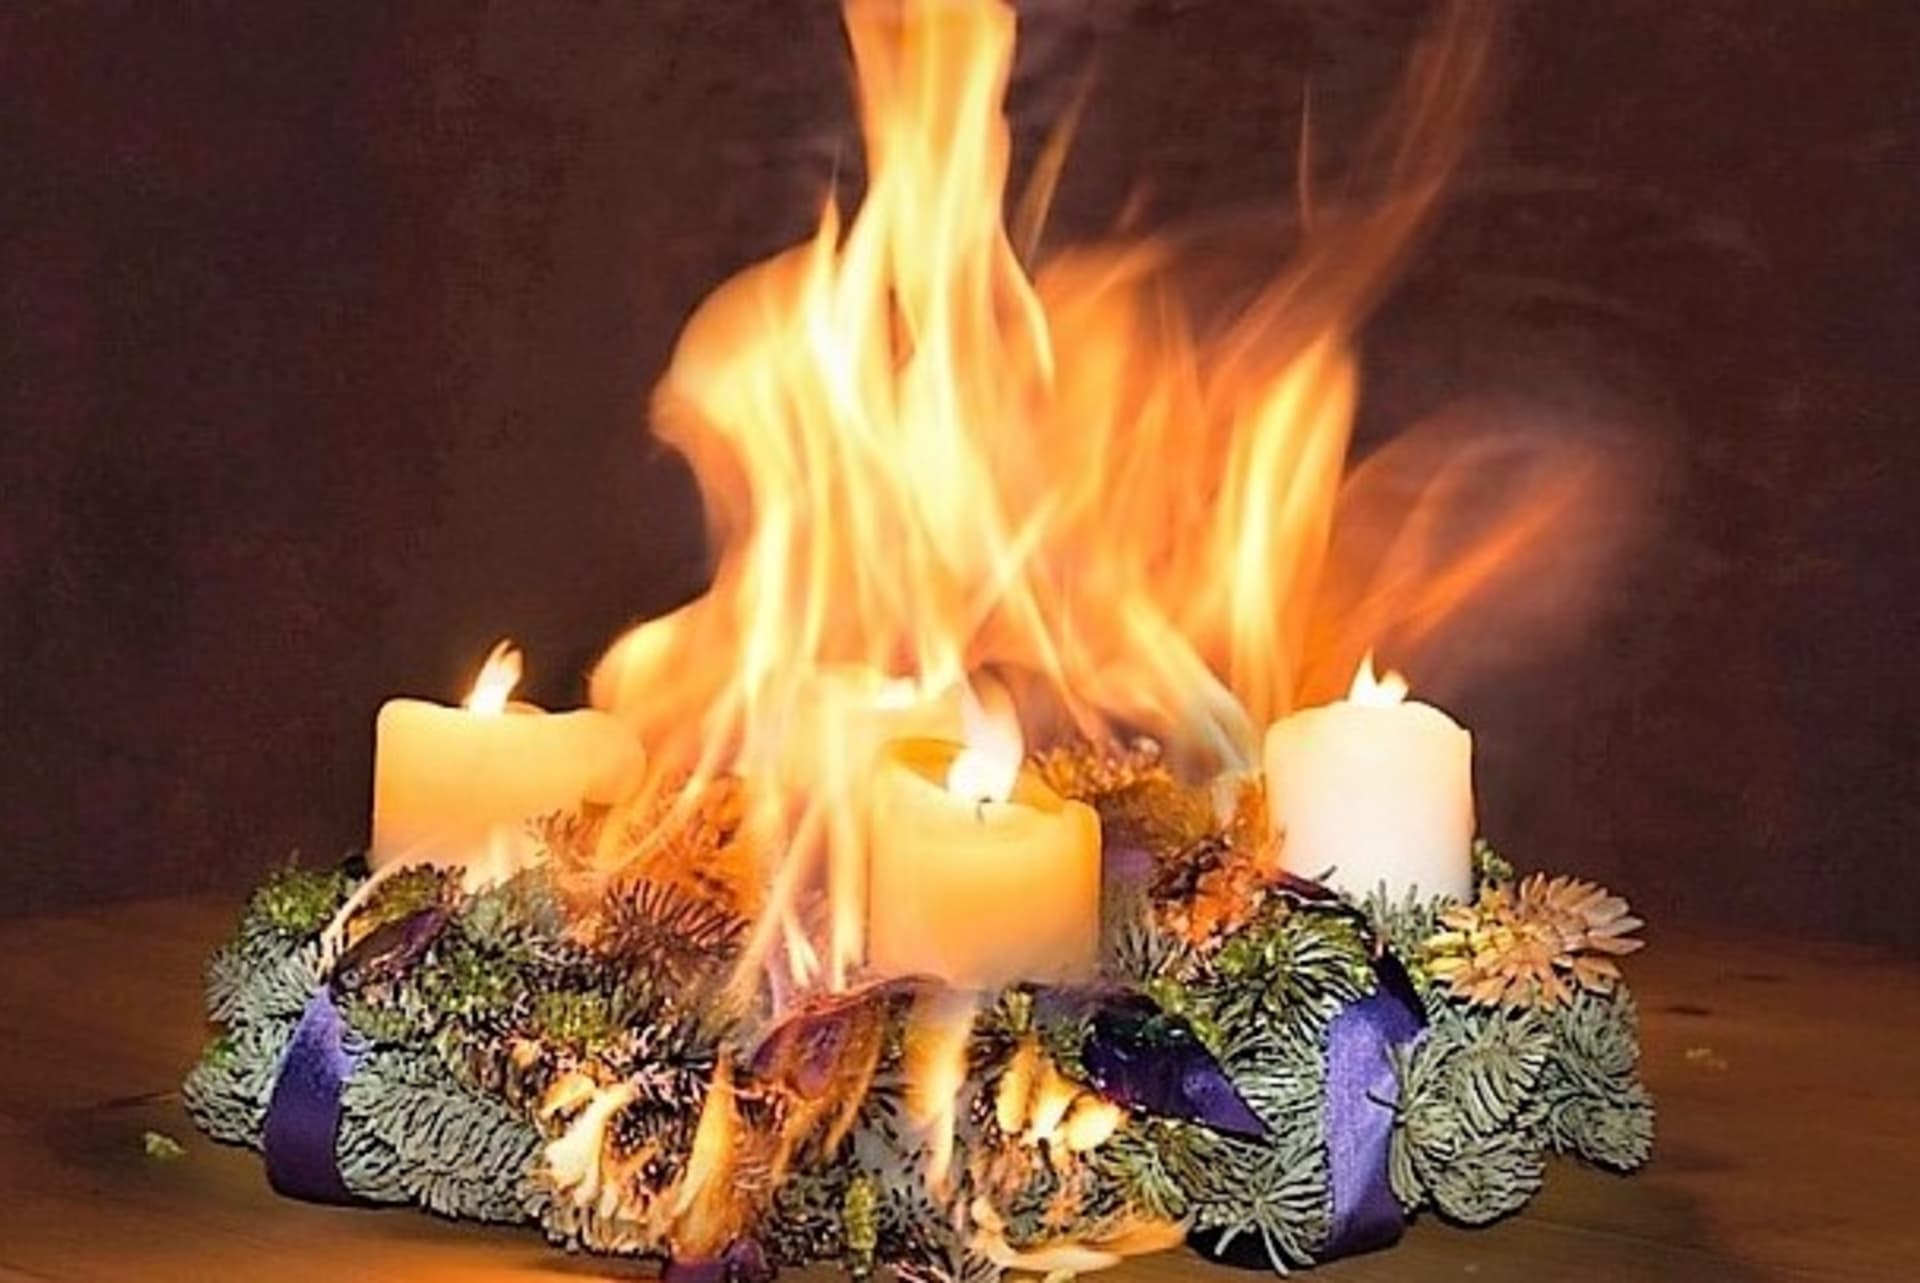 adventní věnec bez ochranných podložek pod svíčkami může sloužit výhradně jako dekorace a v žádném případě svíčky nezapalujte 